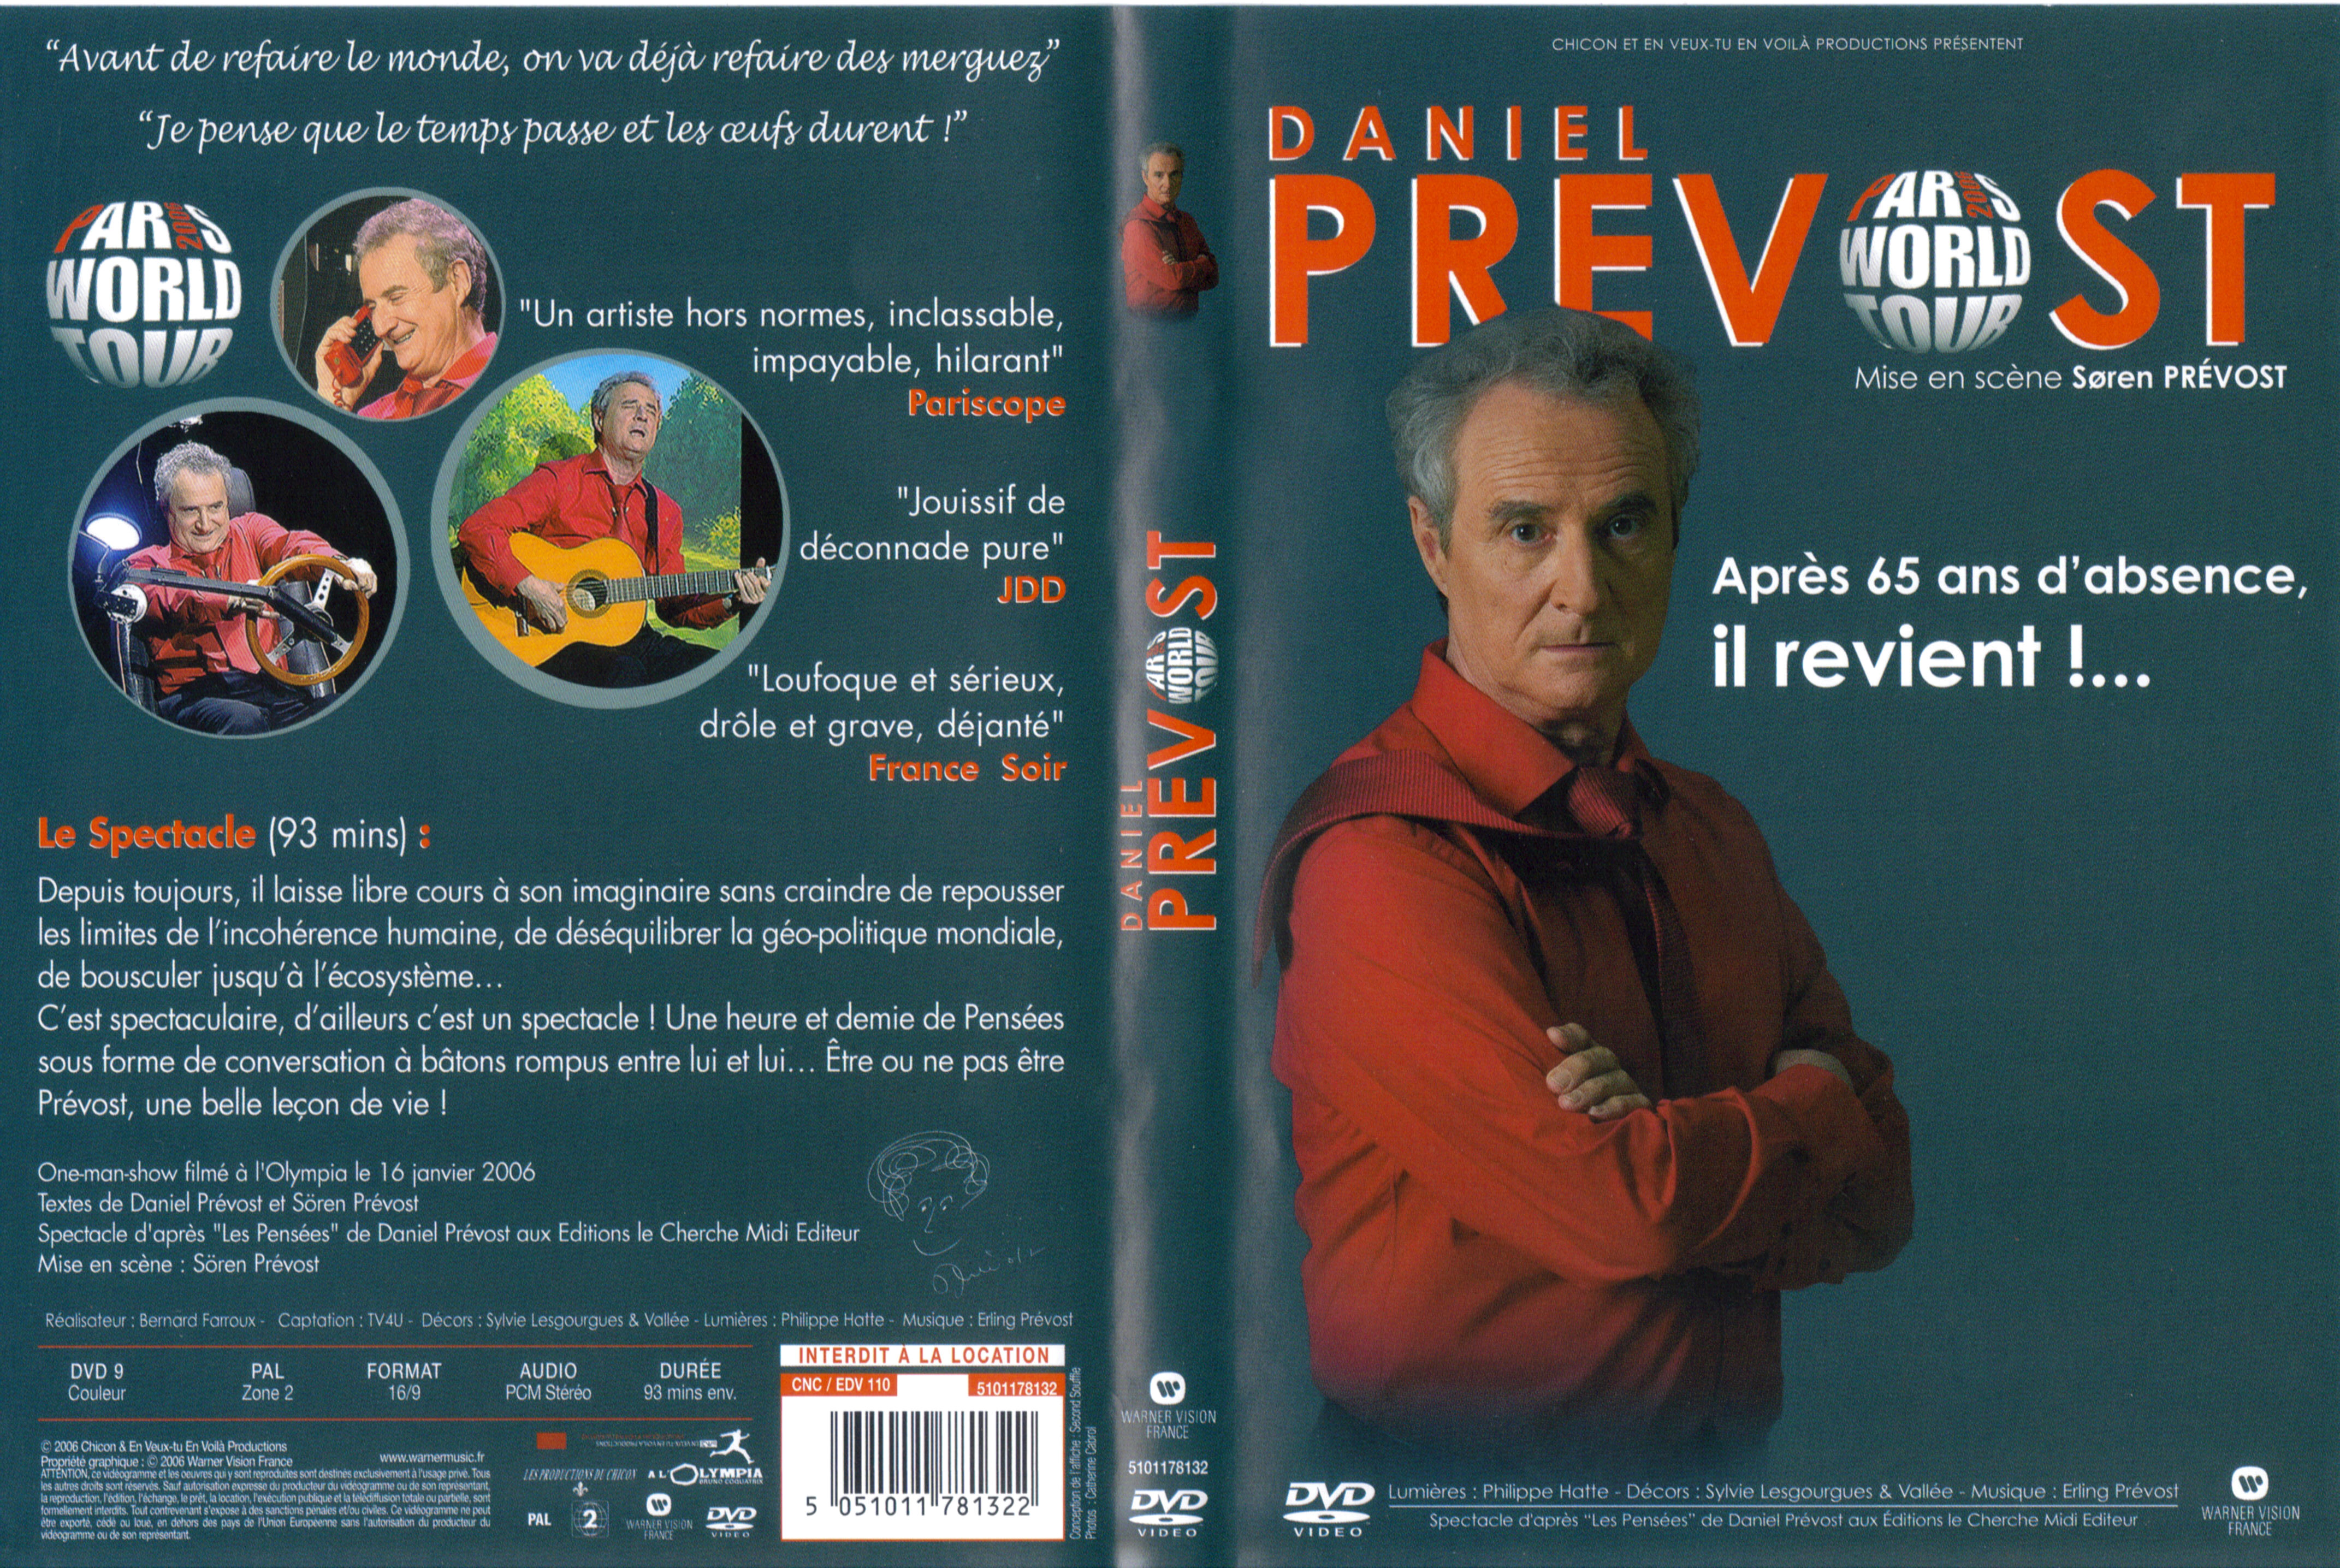 Jaquette DVD Daniel Prevost paris world tour